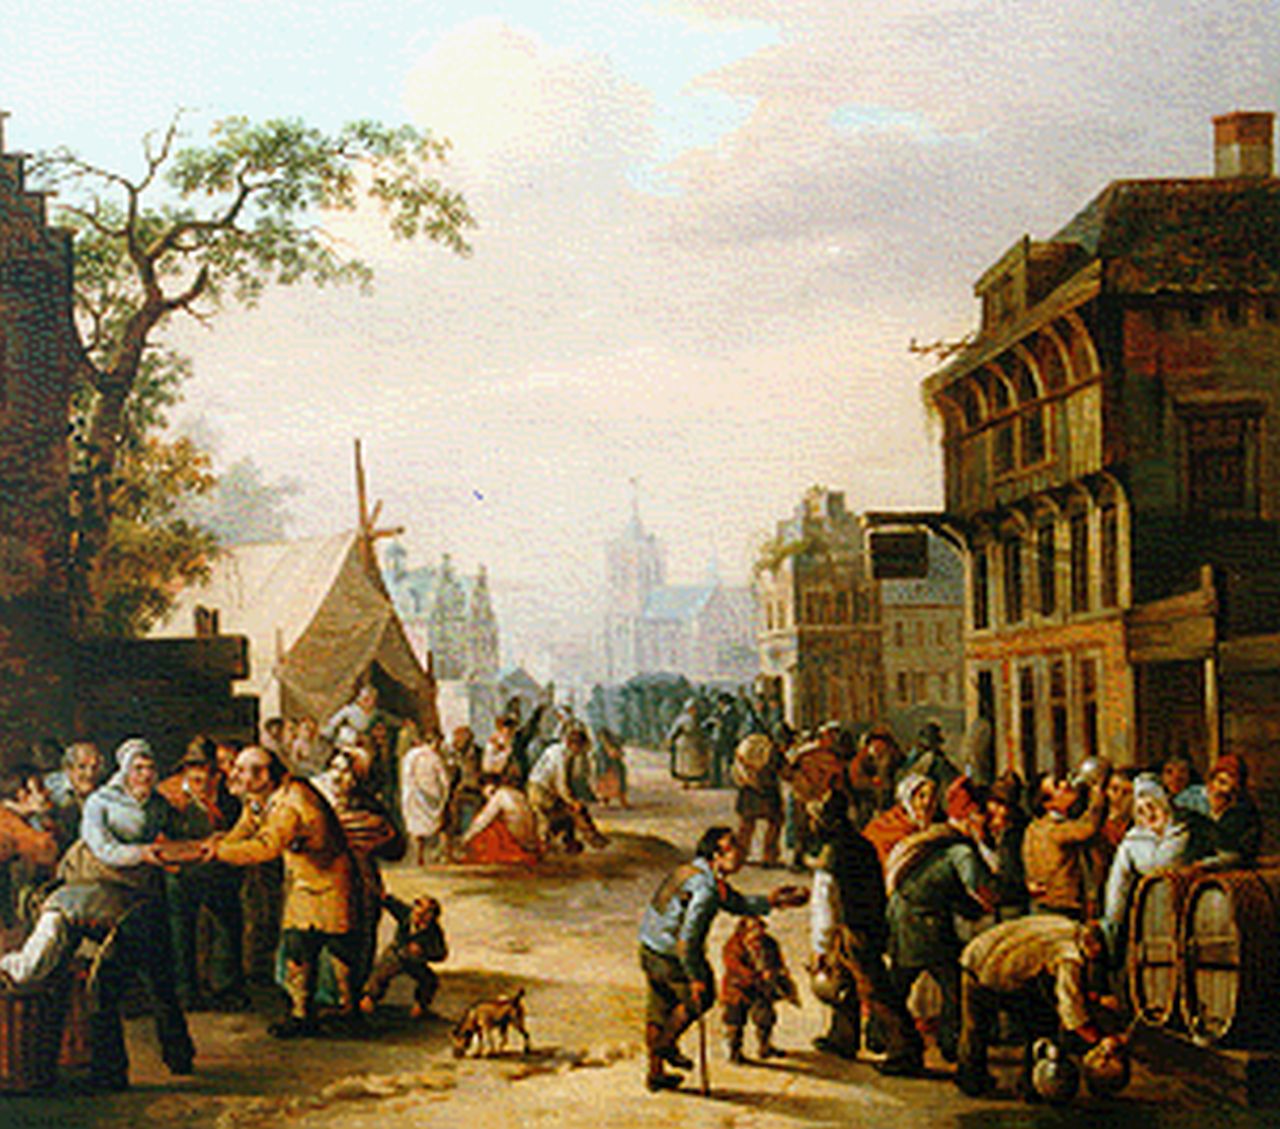 Gerrit Schimmelpenninck Gzn | Daily activites in a Dutch town, Öl auf Leinwand, 47,0 x 53,0 cm, signed l.r.